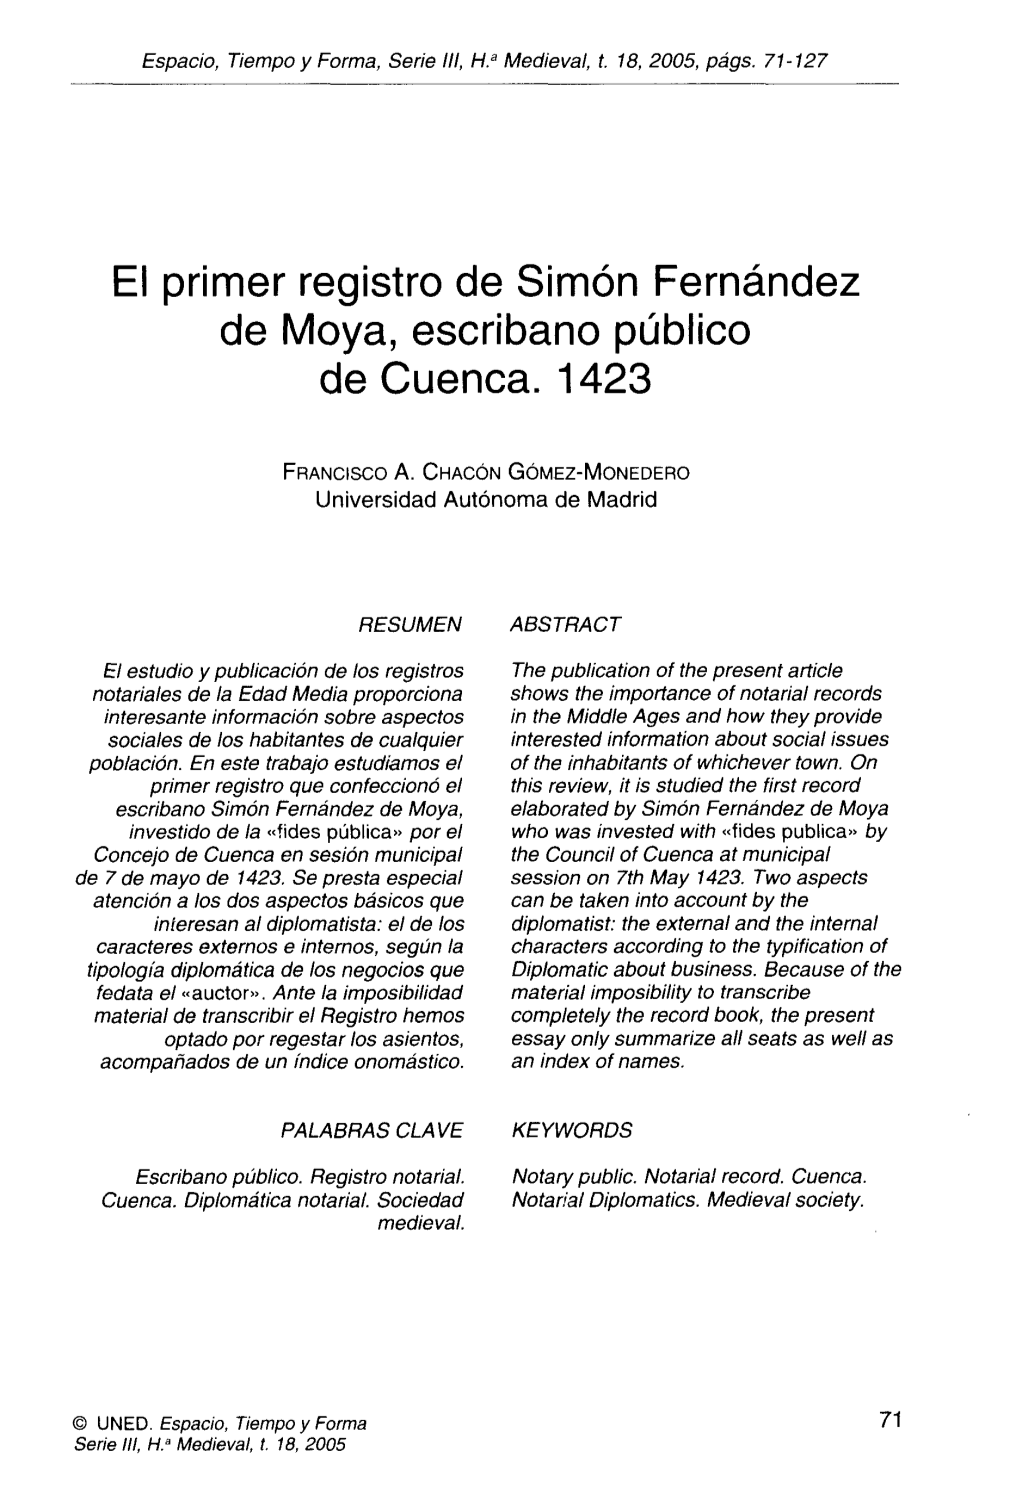 El Primer Registro De Simón Fernández De Moya, Escribano Público De Cuenca